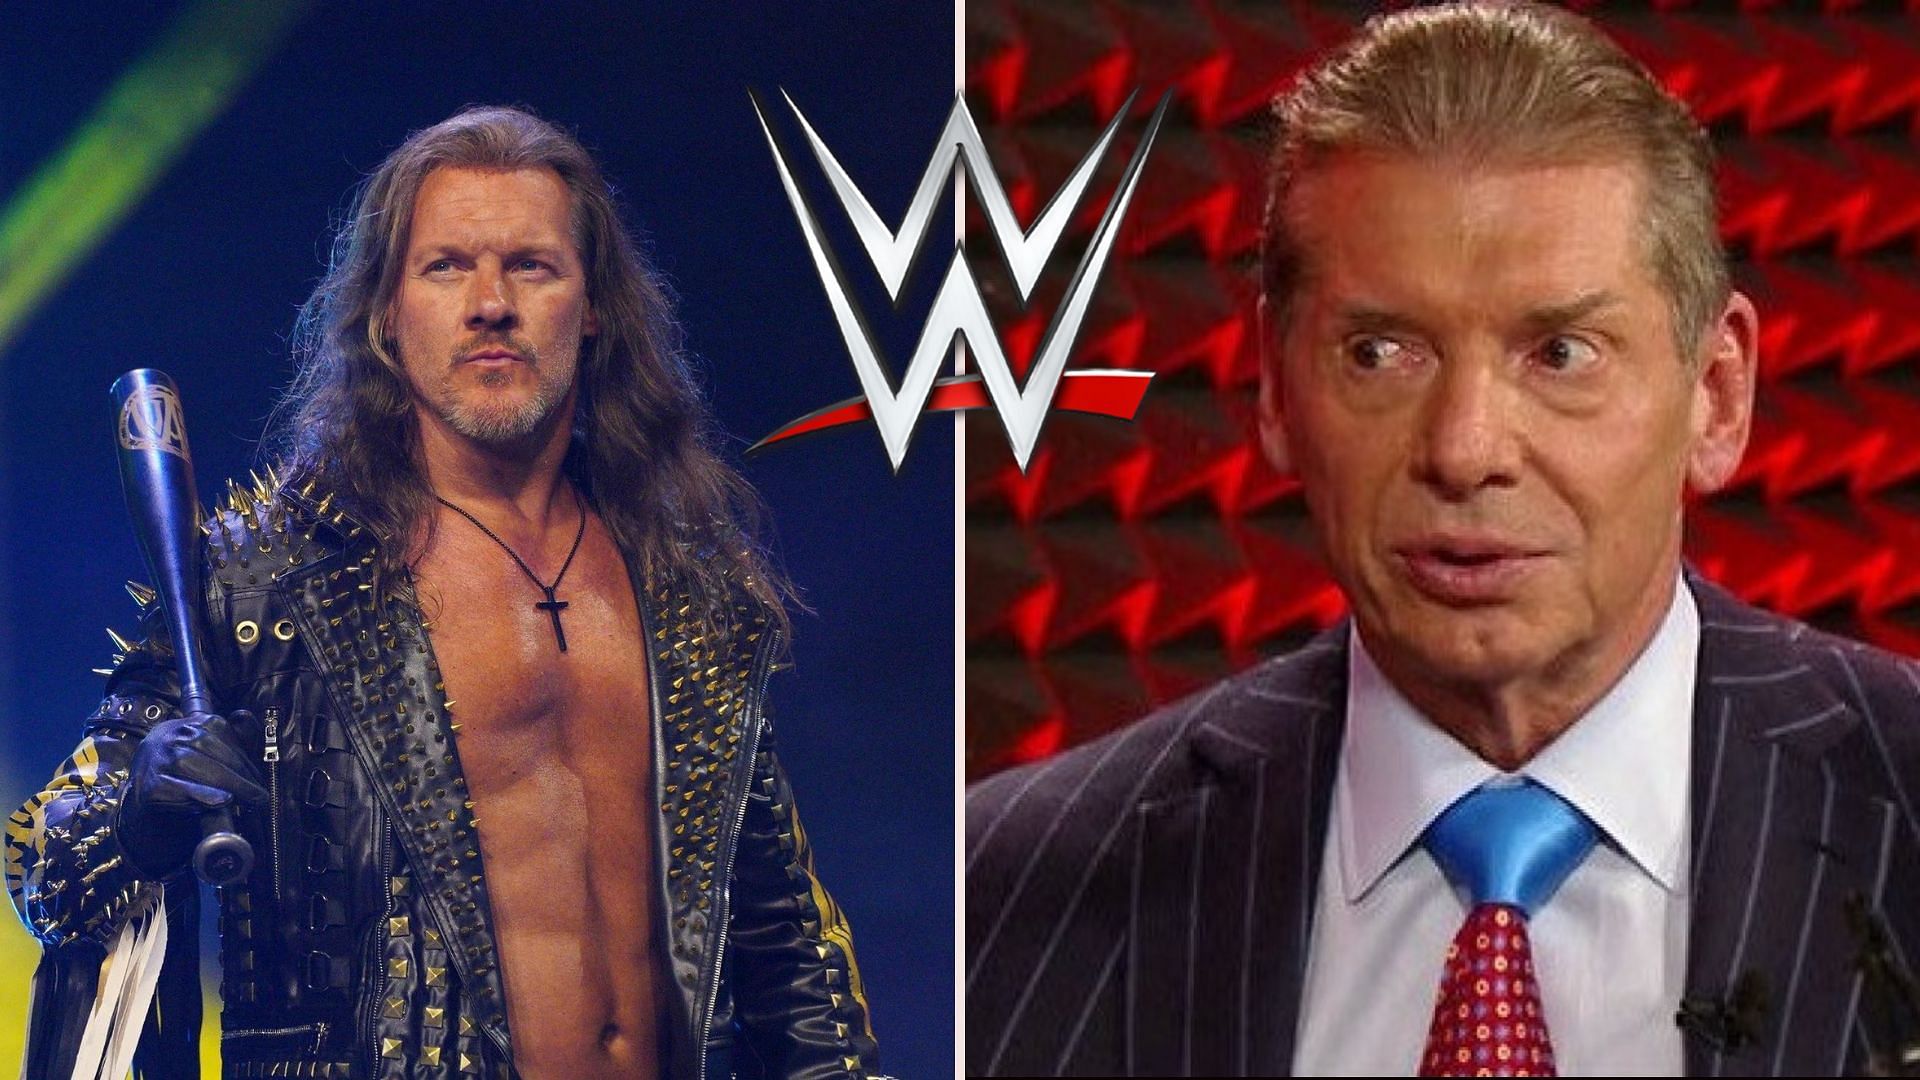 Chris Jericho (left), Vince McMahon (right)